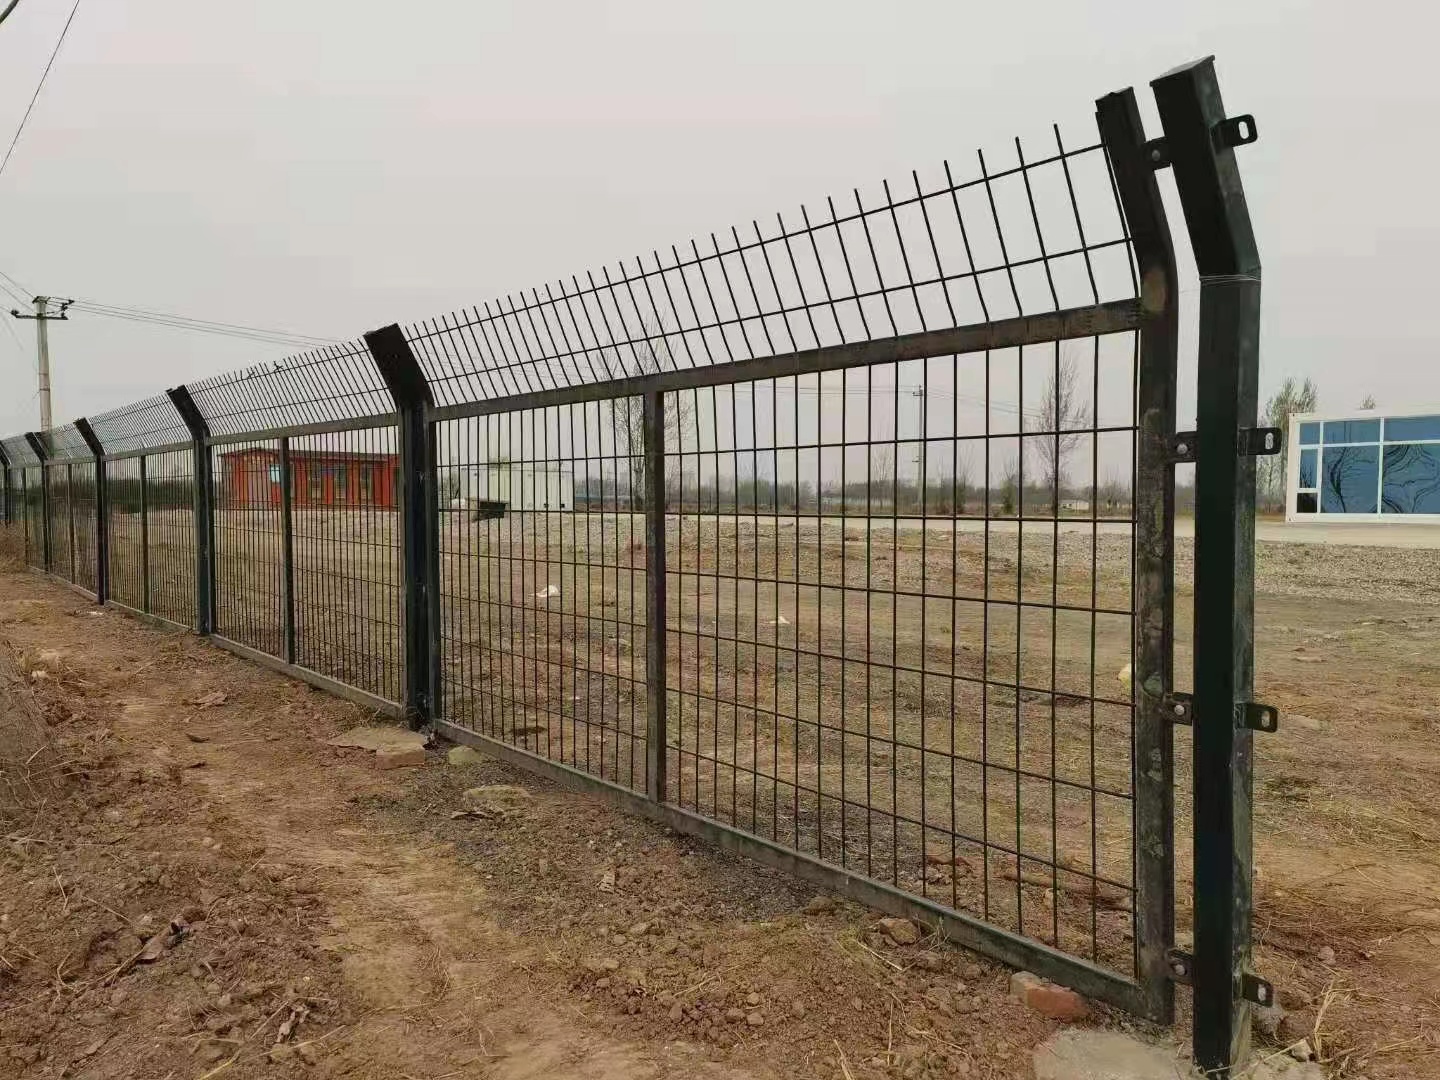 厂家直销金属铁路护栏网 机场防护栅栏道路防护网